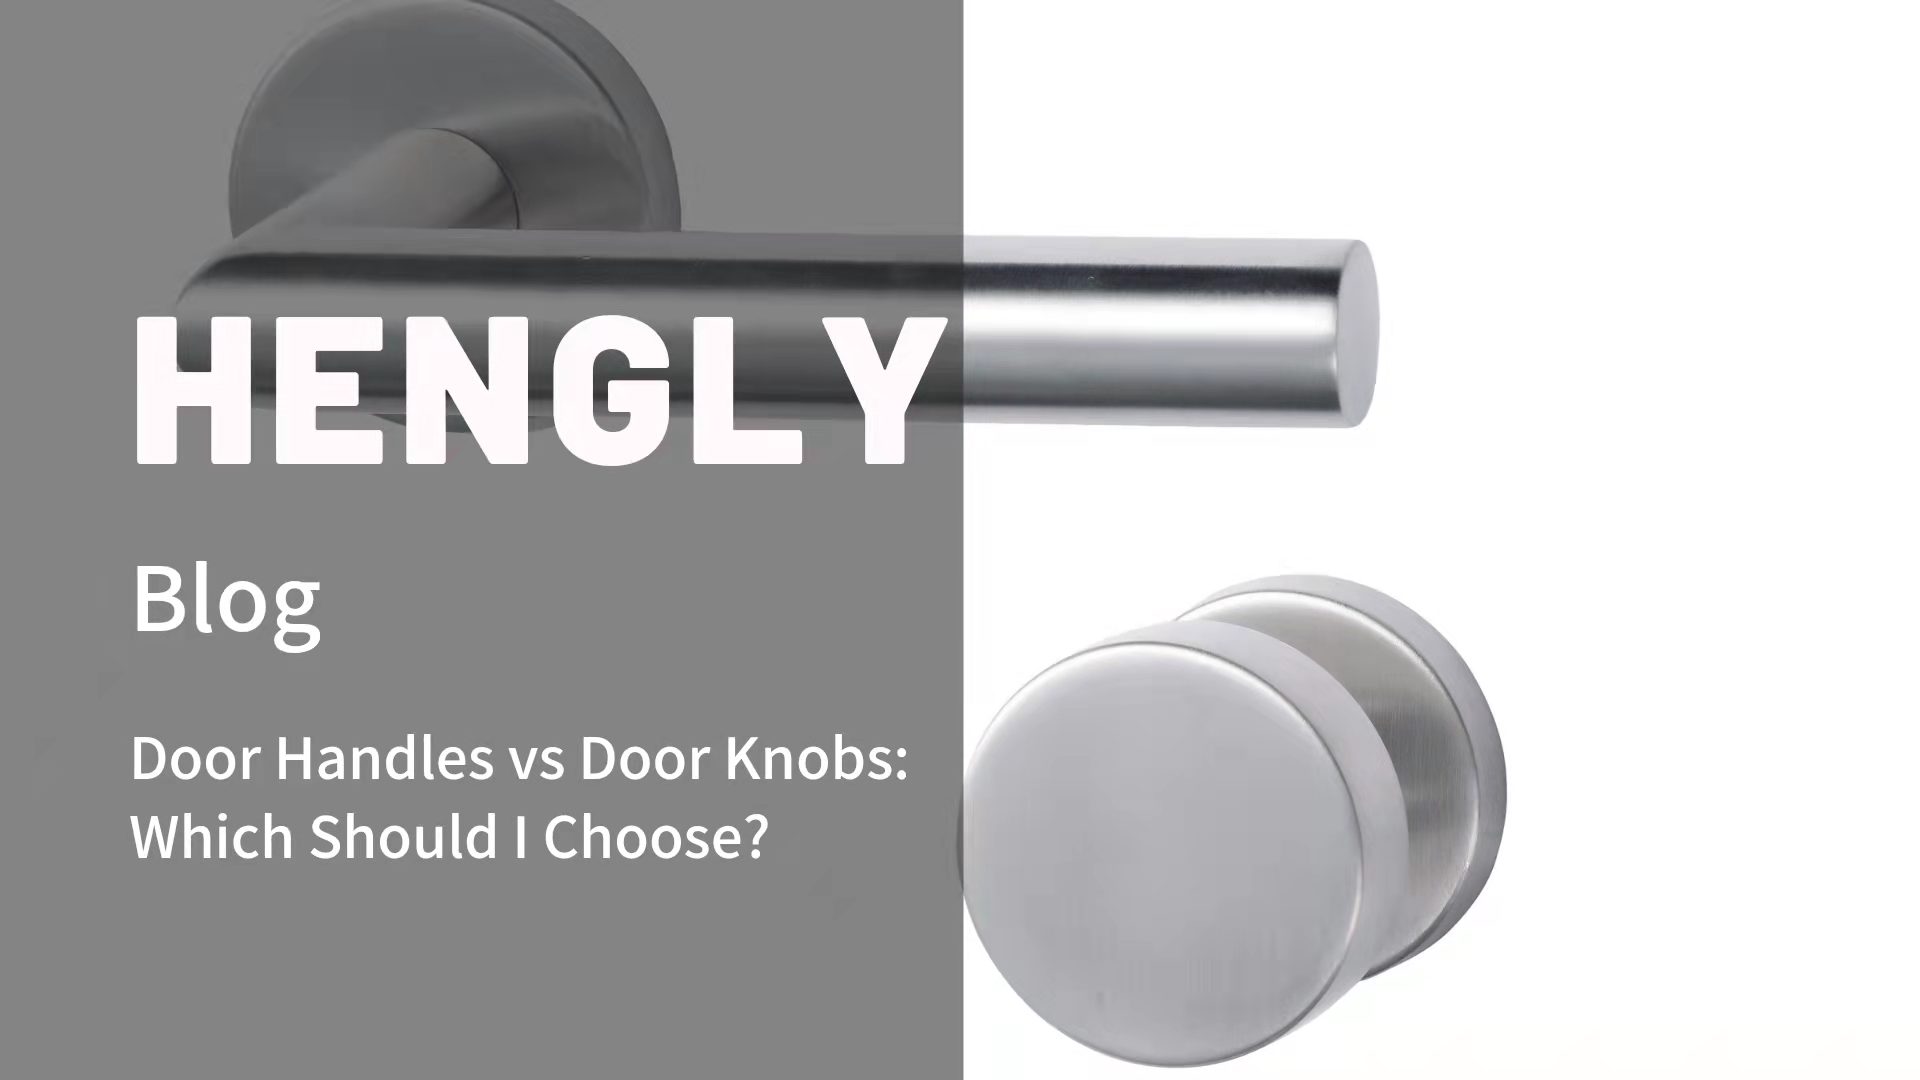 Door Handles vs Door Knobs: Which Should I Choose?